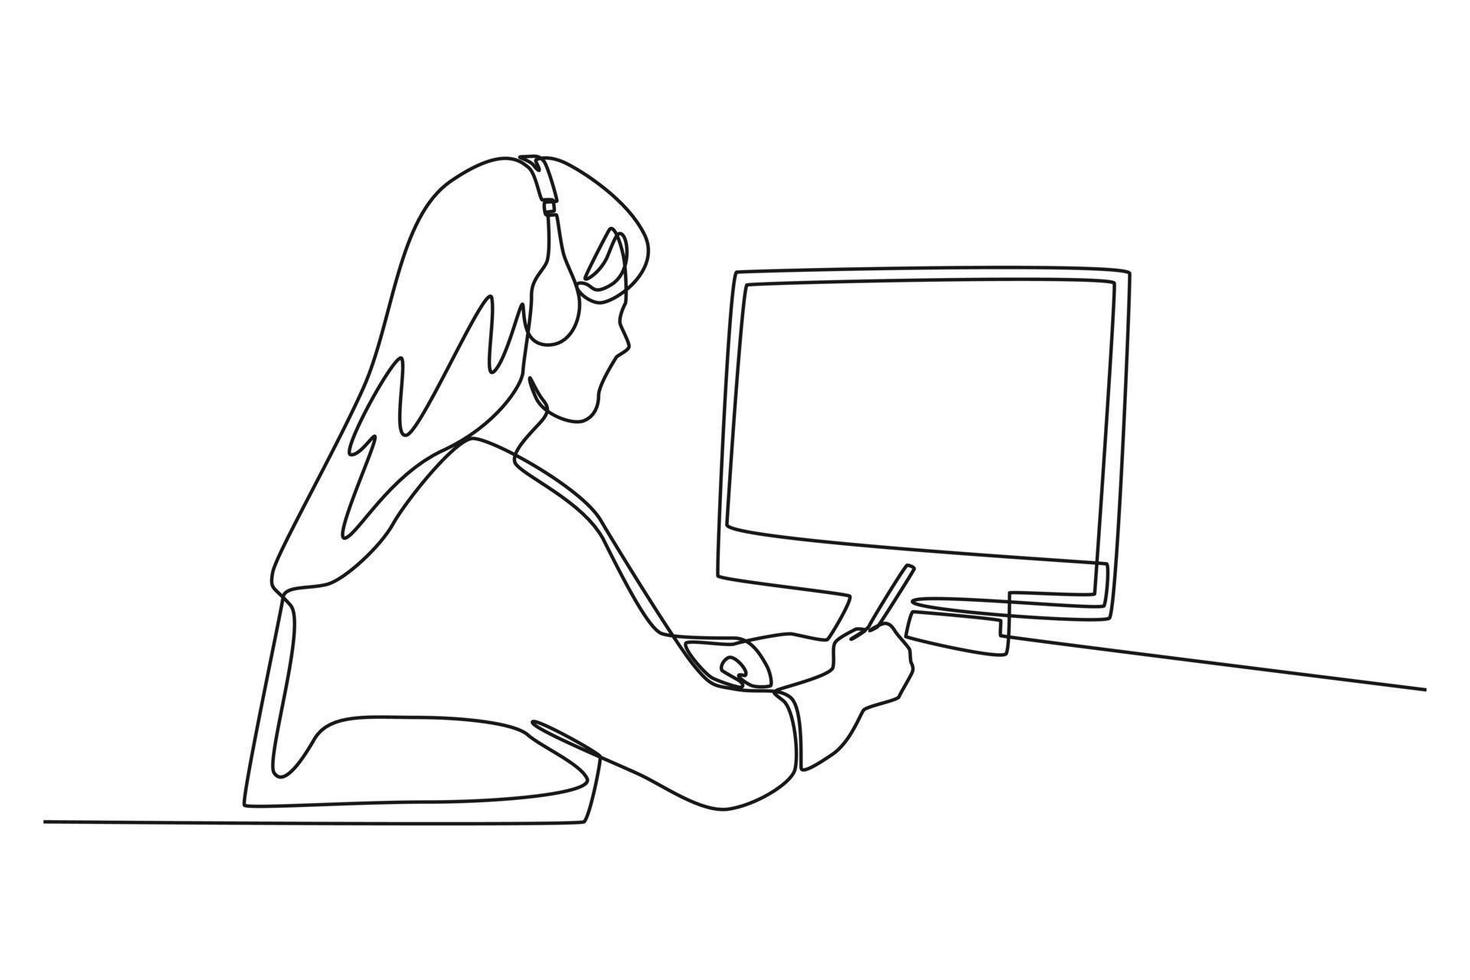 una sola línea dibujando a una mujer joven que estudia y escucha una conferencia, ve seminarios web y escribe notas mirando una laptop. ilustración de vector gráfico de diseño de dibujo de línea continua.